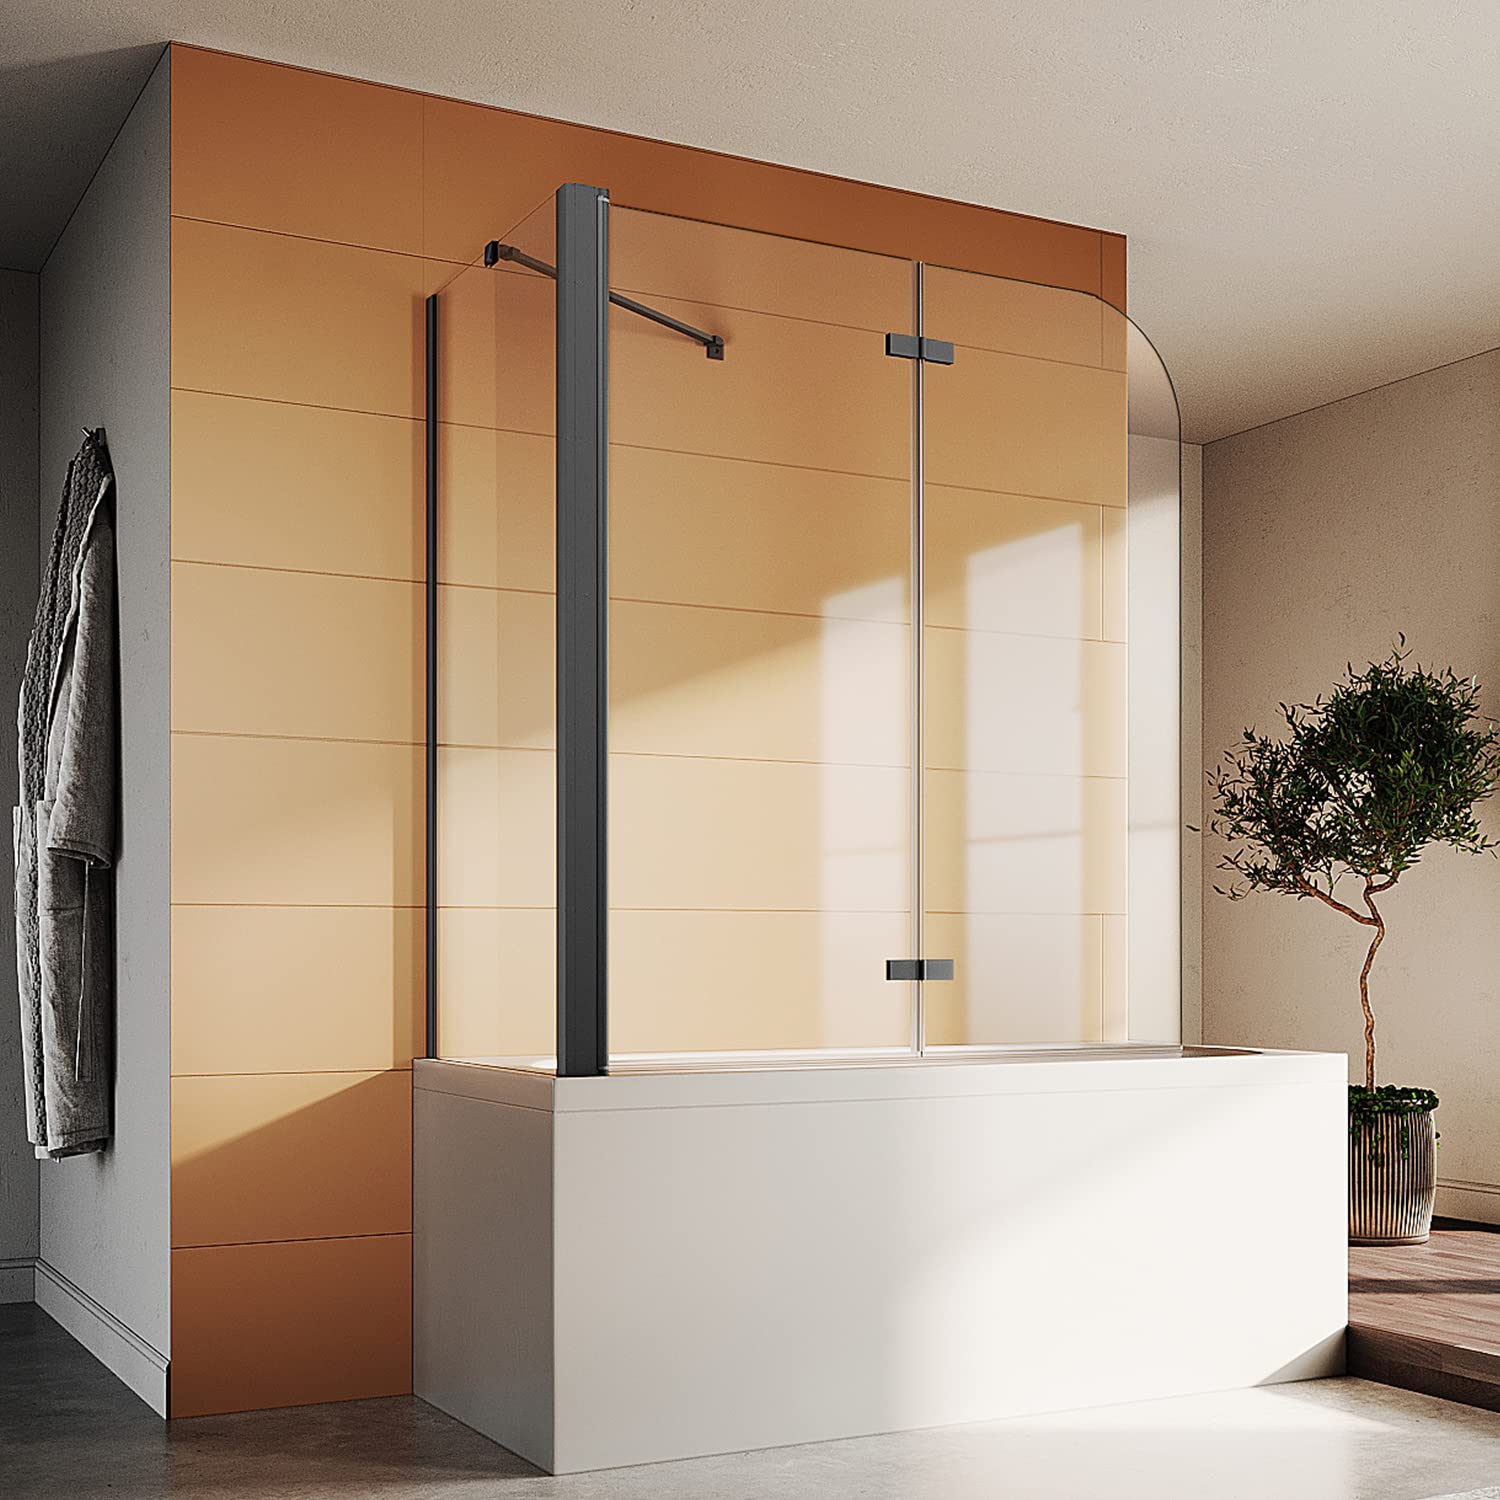 Image of SONNI Duschwand für Badewanne Schwarz mit Seitenwand NANO-GLAS Badewannenaufsatz 2-teilig faltbar 120x140 cm(BxH) Duschabtrennung Badewanne